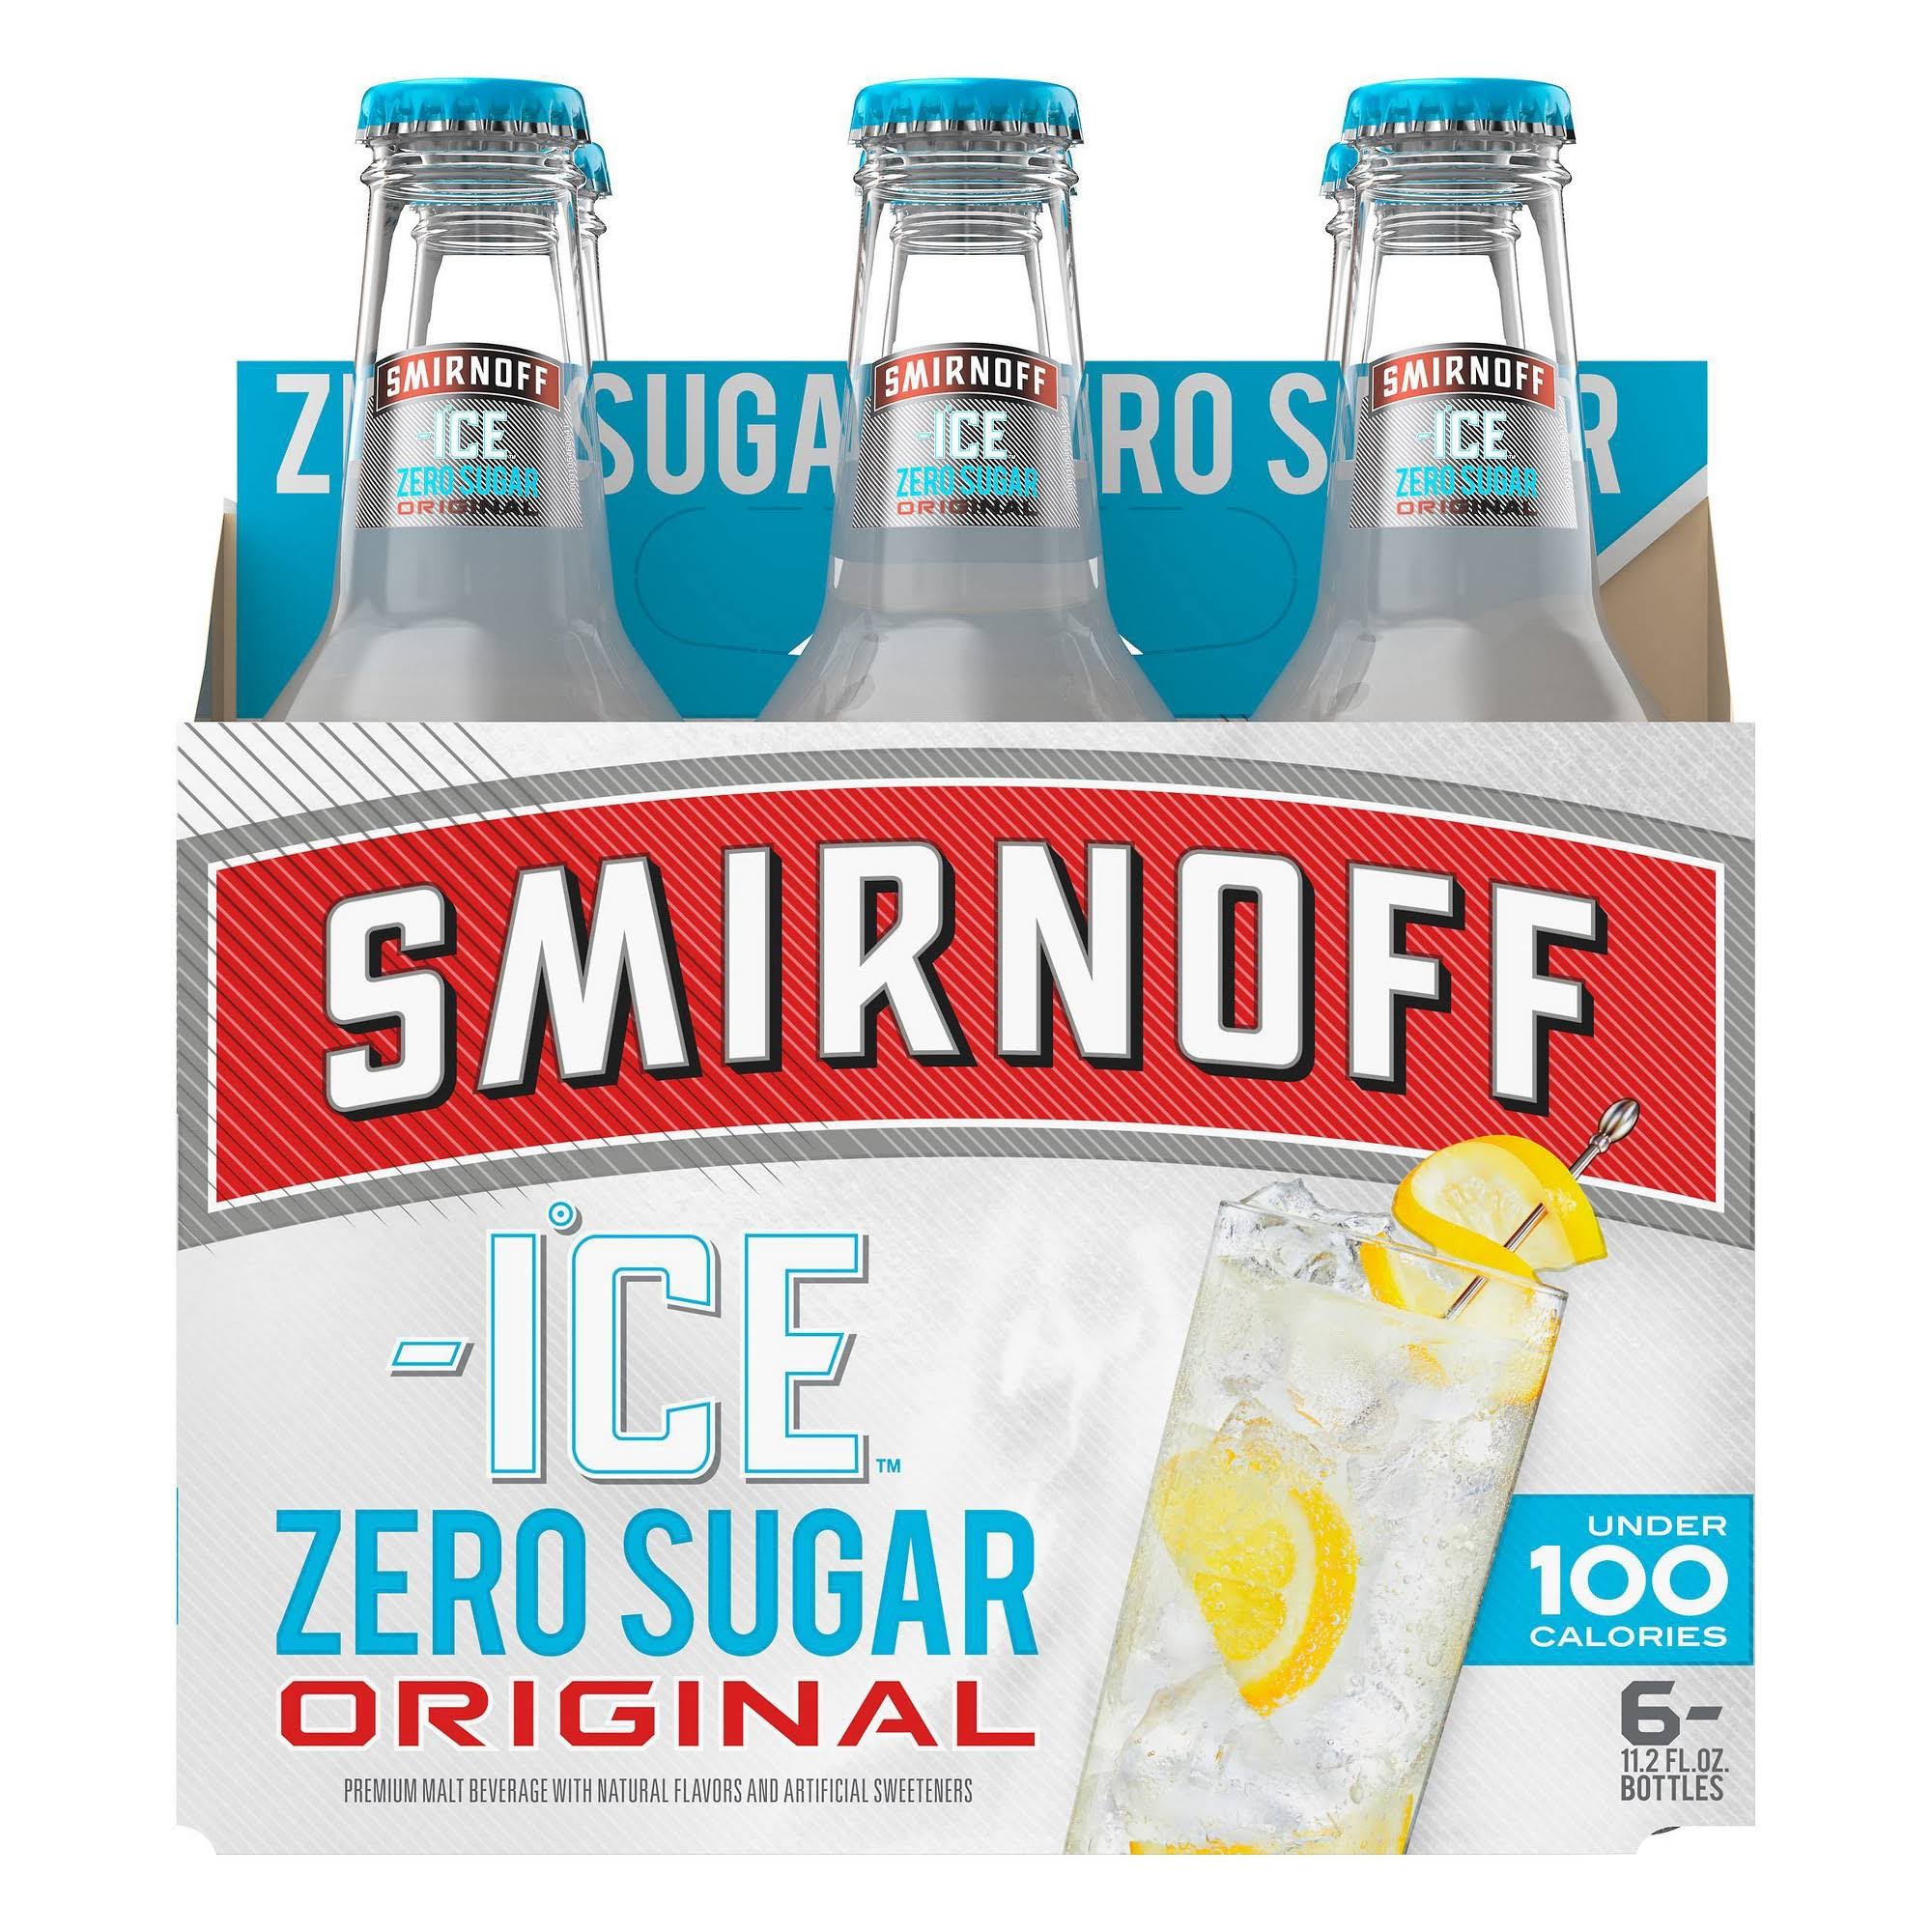 Smirnoff Ice Malt Beverage, Zero Sugar, Original - 6 pack, 11.2 fl oz bottles